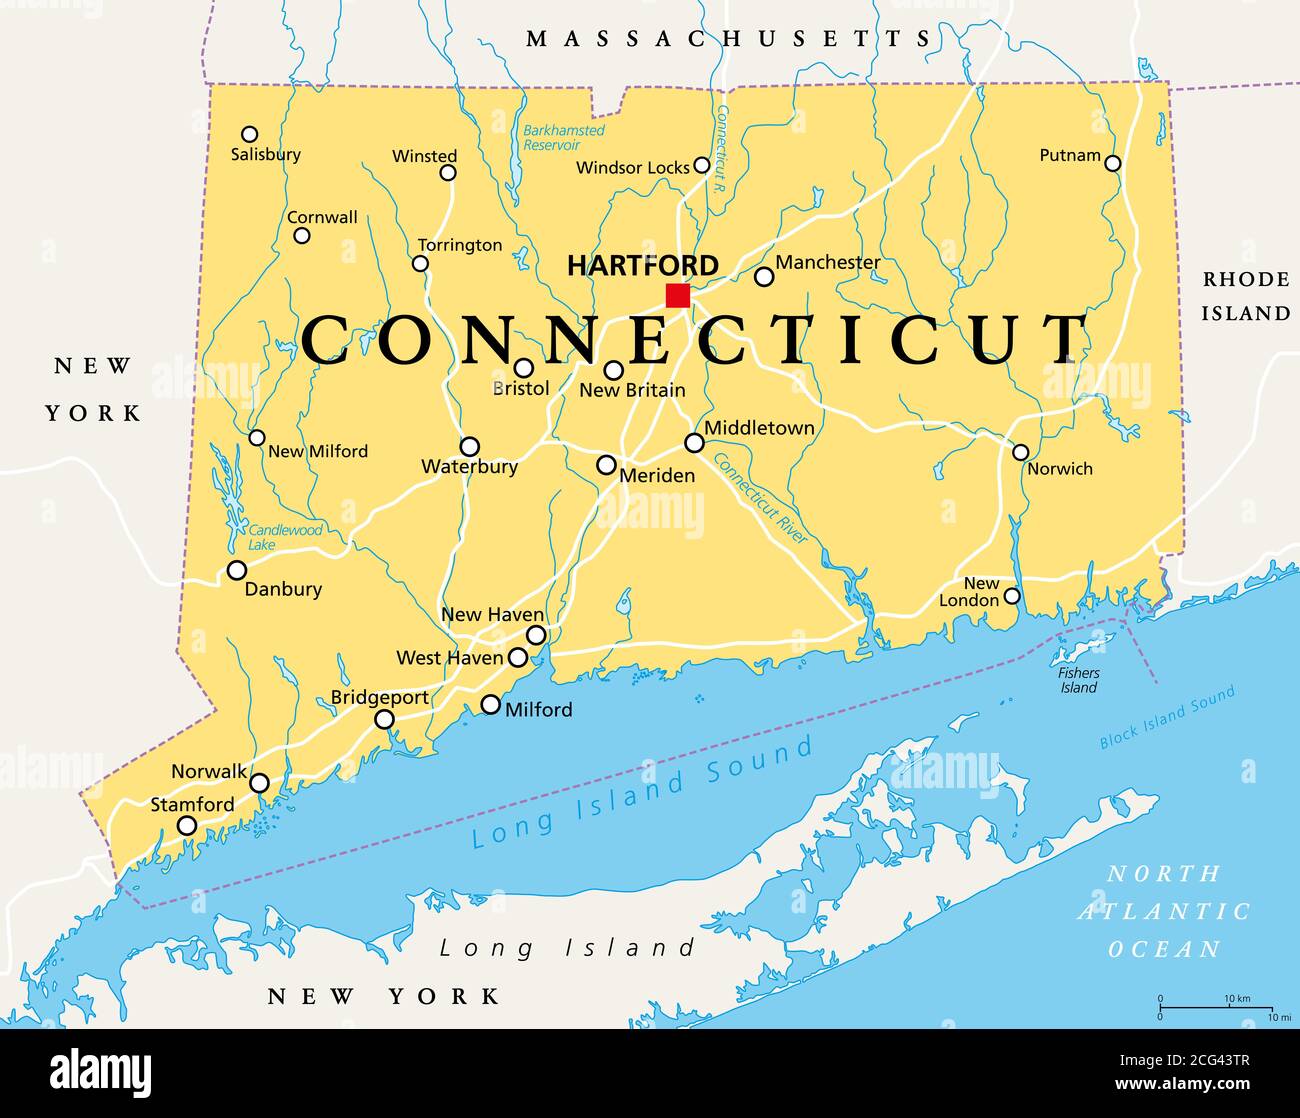 Connecticut Mappa Politica Con La Capitale Hartford Stato Del Connecticut Ct Lo Stato Piu Meridionale Della Regione Del New England Degli Stati Uniti 2cg43tr 